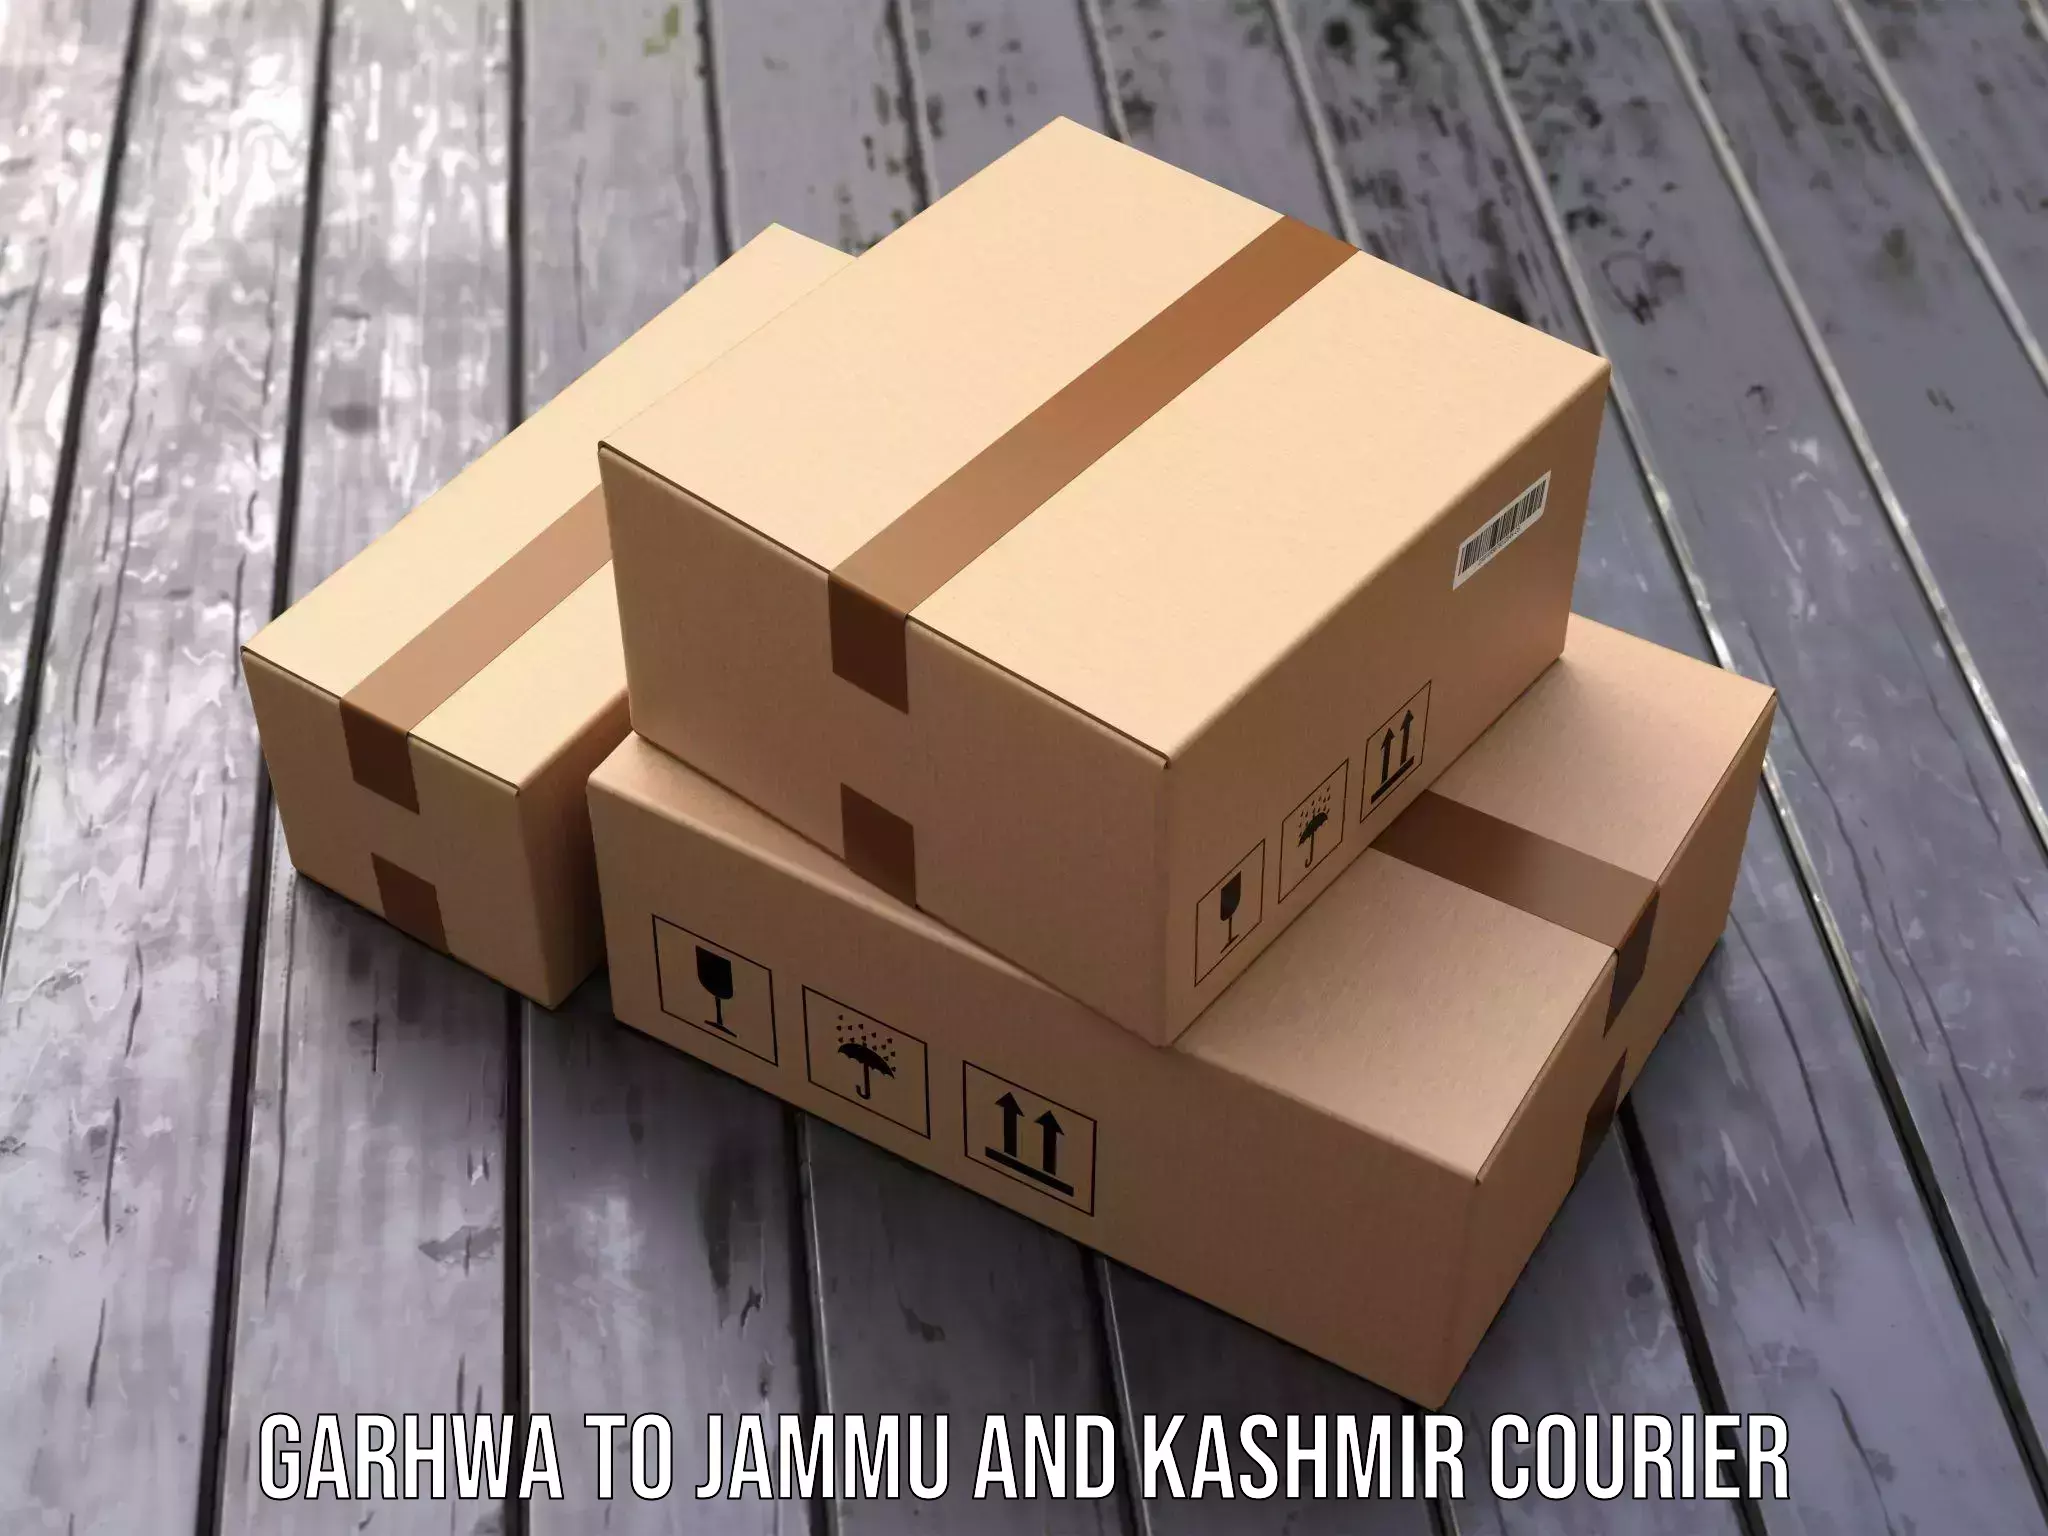 Door-to-door shipment Garhwa to Bhaderwah